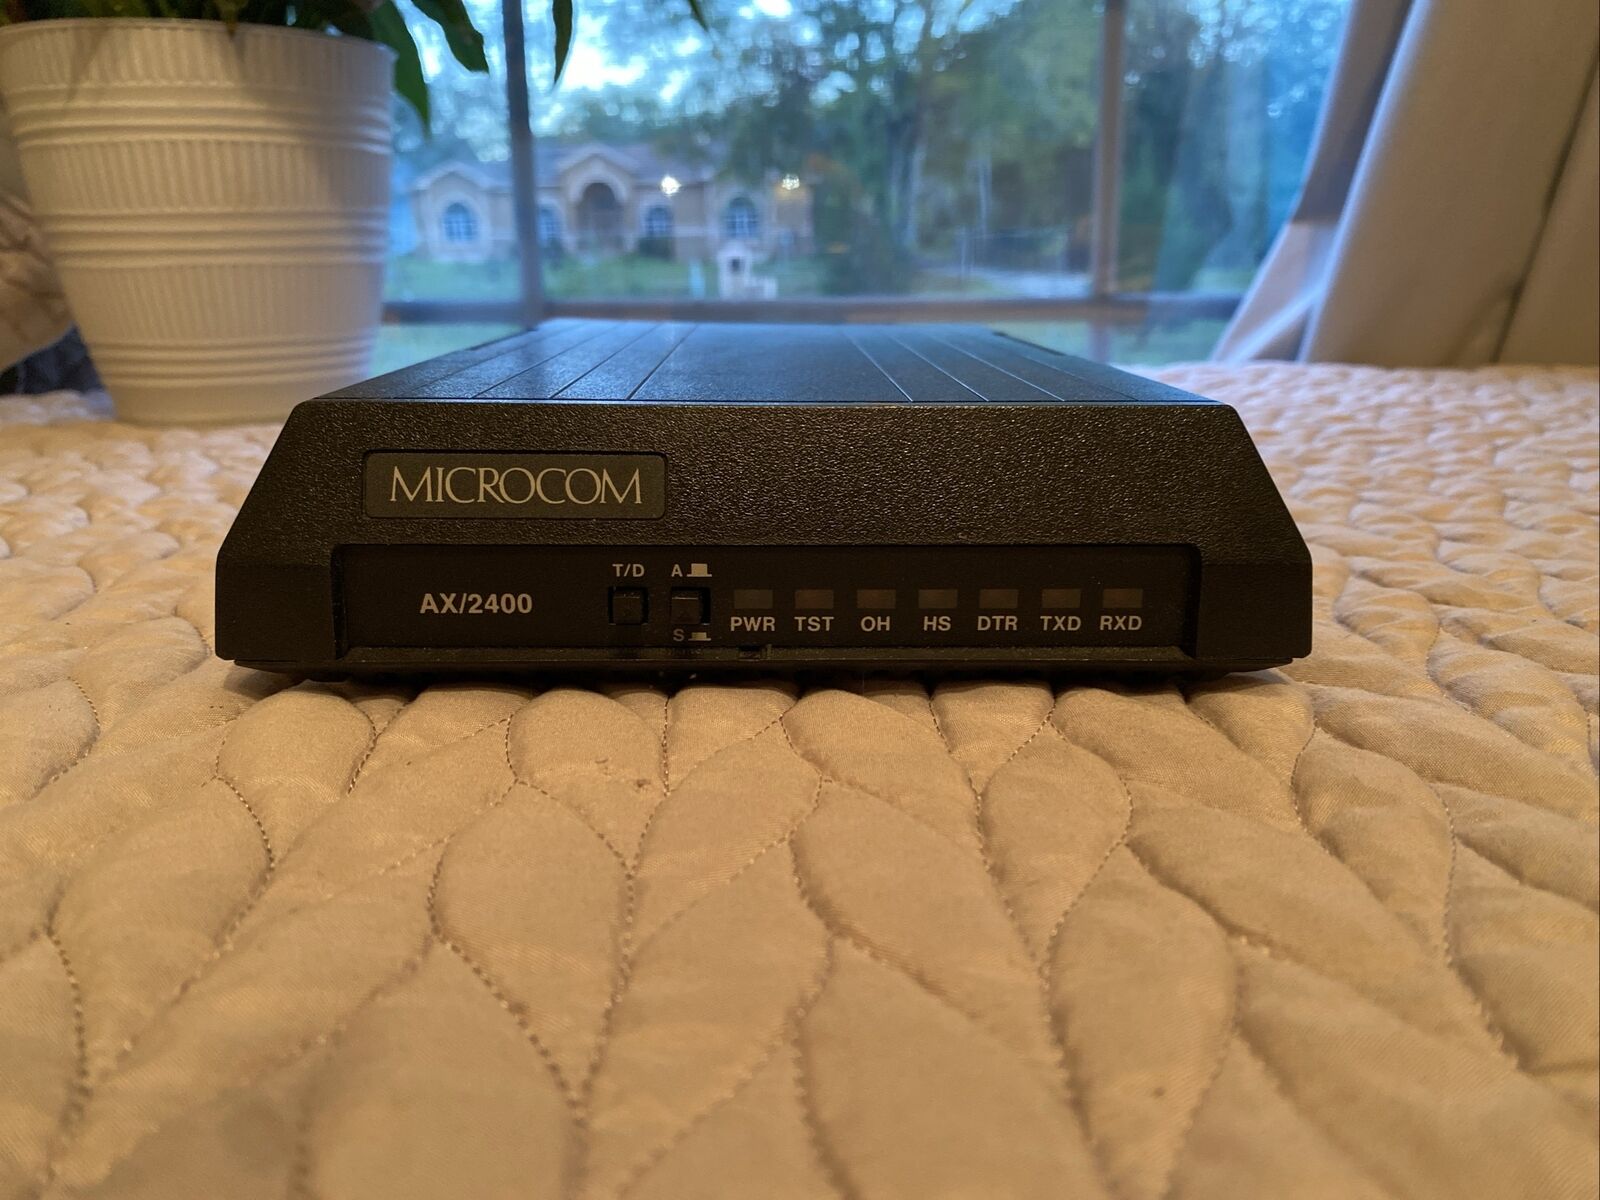 MICROCOM AX/2400 Modem. Non C Model. Very Rare No Power Cable